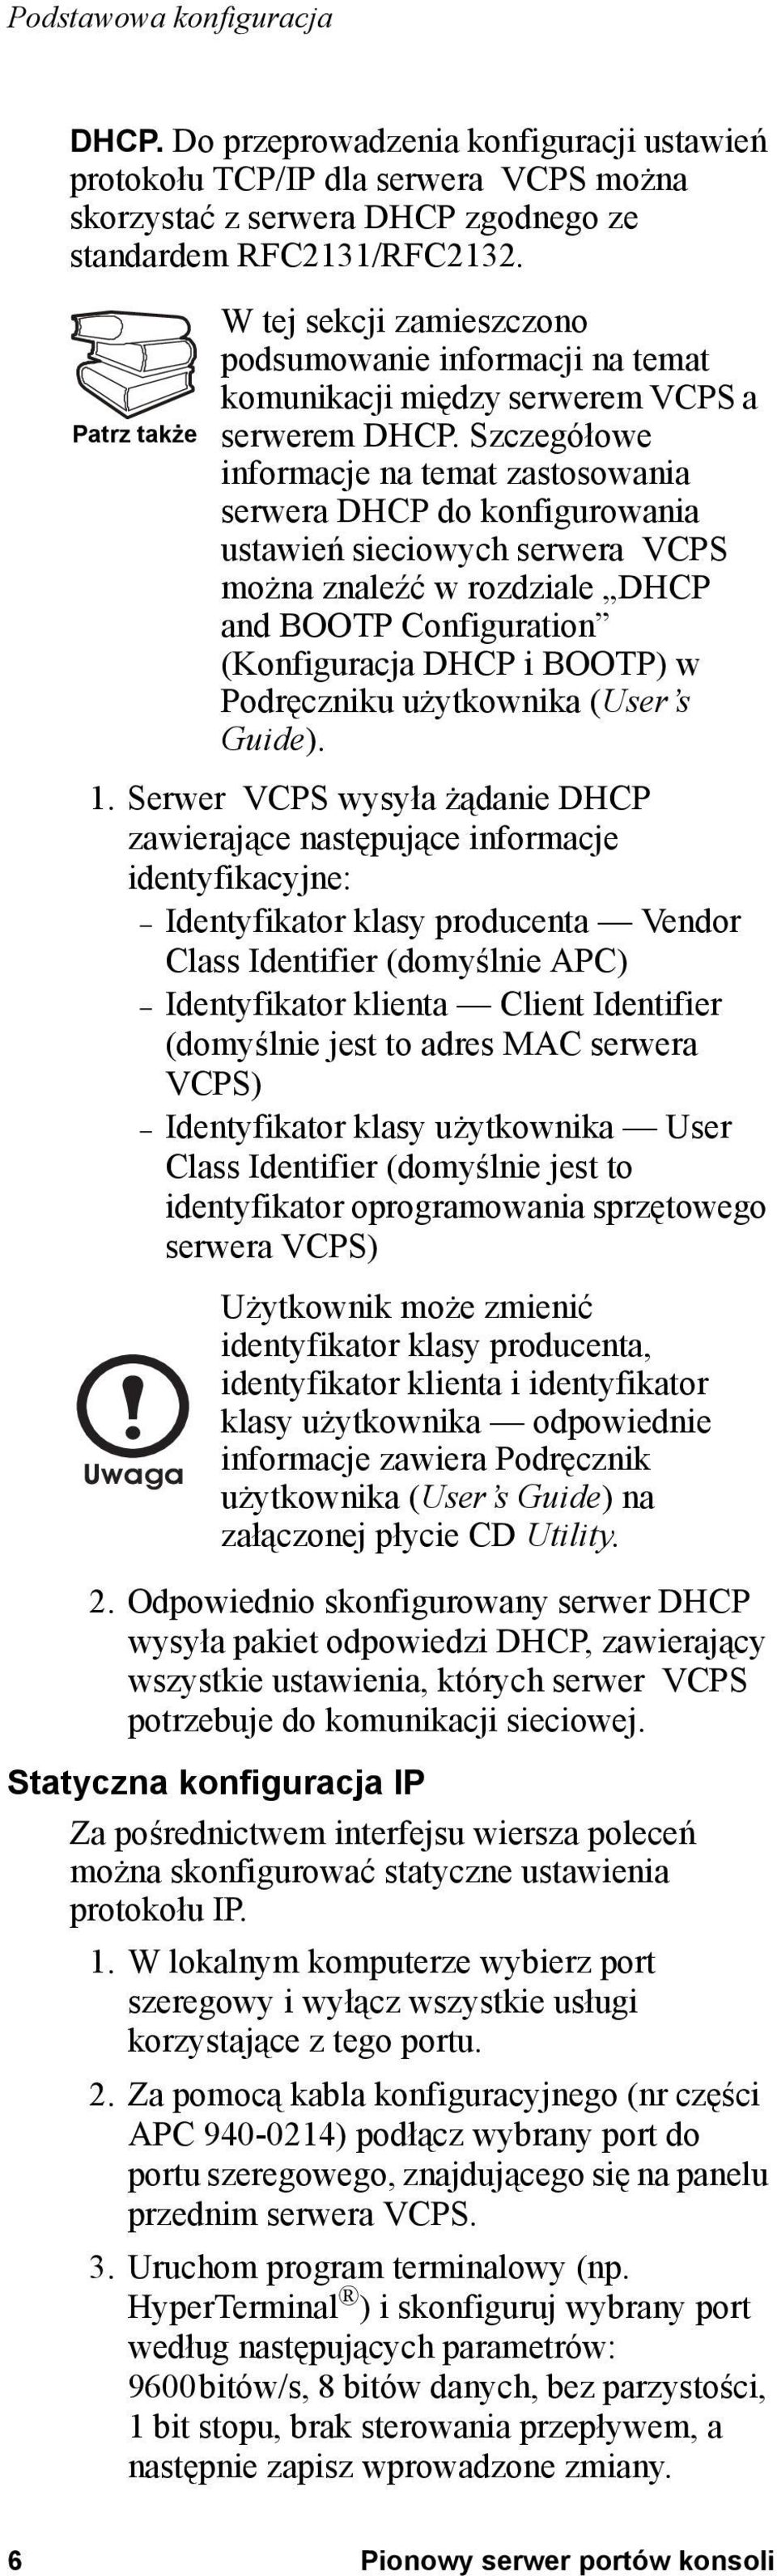 Szczegółowe informacje na temat zastosowania serwera DHCP do konfigurowania ustawień sieciowych serwera VCPS można znaleźć w rozdziale DHCP and BOOTP Configuration (Konfiguracja DHCP i BOOTP) w